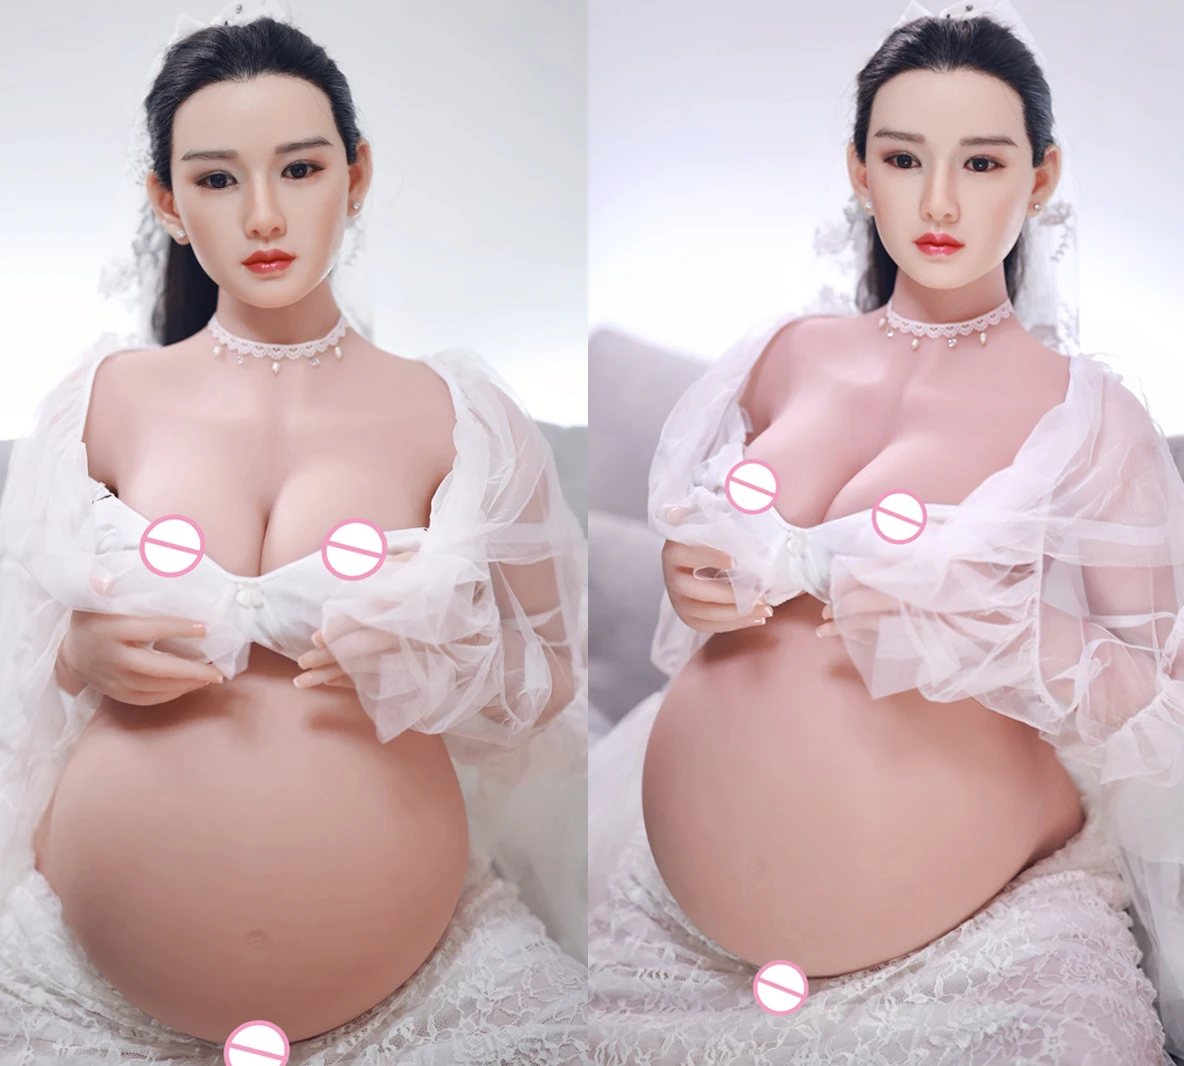 голая беременная кукла